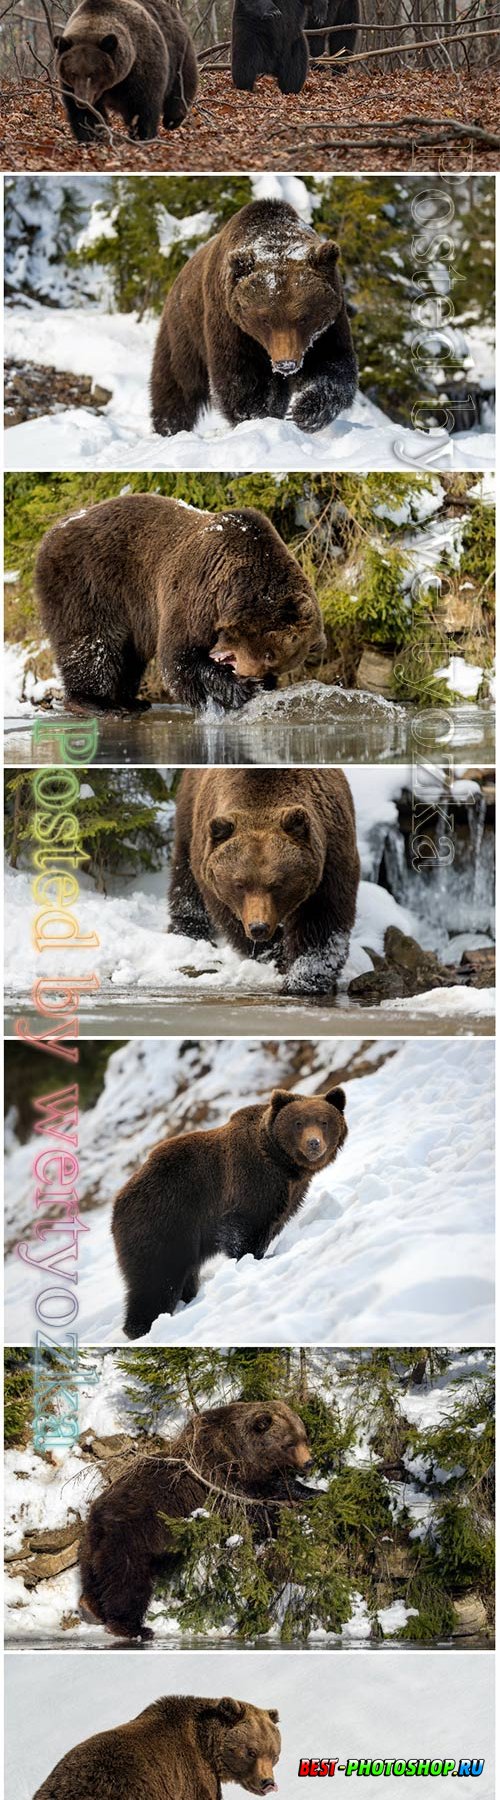 Wild brown bear beautiful stock photo